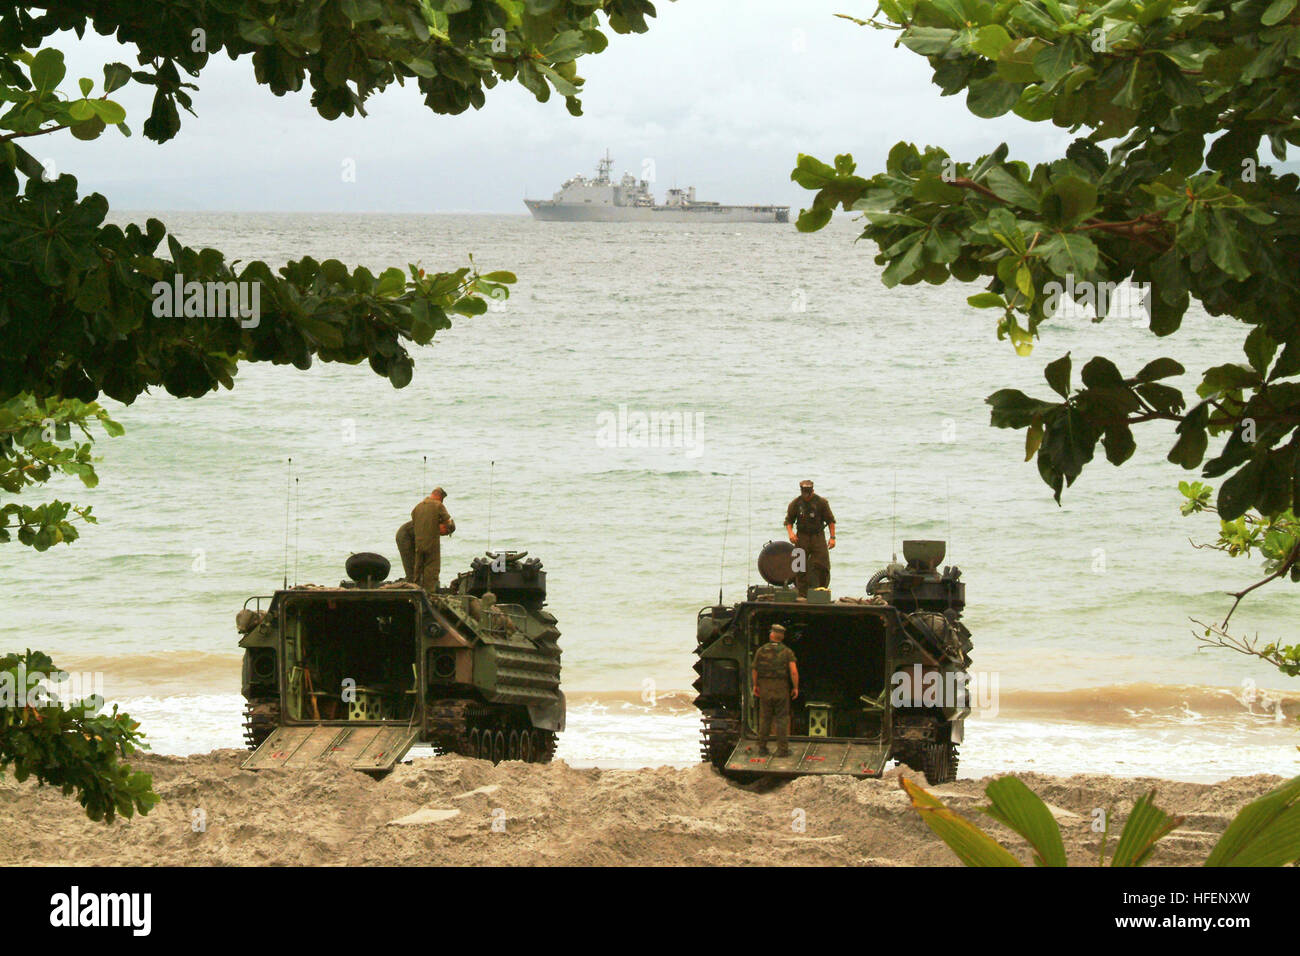 030918-N-0401E-007 Luzon, Philippines (Septembre 1994). 18, 2003) -- USS Harpers Ferry (LSD 49) croisière au large des côtes des Philippines comme véhicules d'assaut amphibie (AAV) attendre pour transporter le personnel et le matériel au navire. Passer de l'AAV du navire à la terre, capables de 8 à 10 noeuds dans l'eau et plus de 45 mph sur terre l'exécution soit personnel ou matériel de soutien, en plus d'avoir un fusil de calibre 50 et un lance-grenades pour l'armement. Harpers Ferry fait partie de l'USS Essex (DG 2) Groupe d'intervention amphibie avec l'entrepris 31e Marine Expeditionary Unit participe en Bleu/Gre Banque D'Images